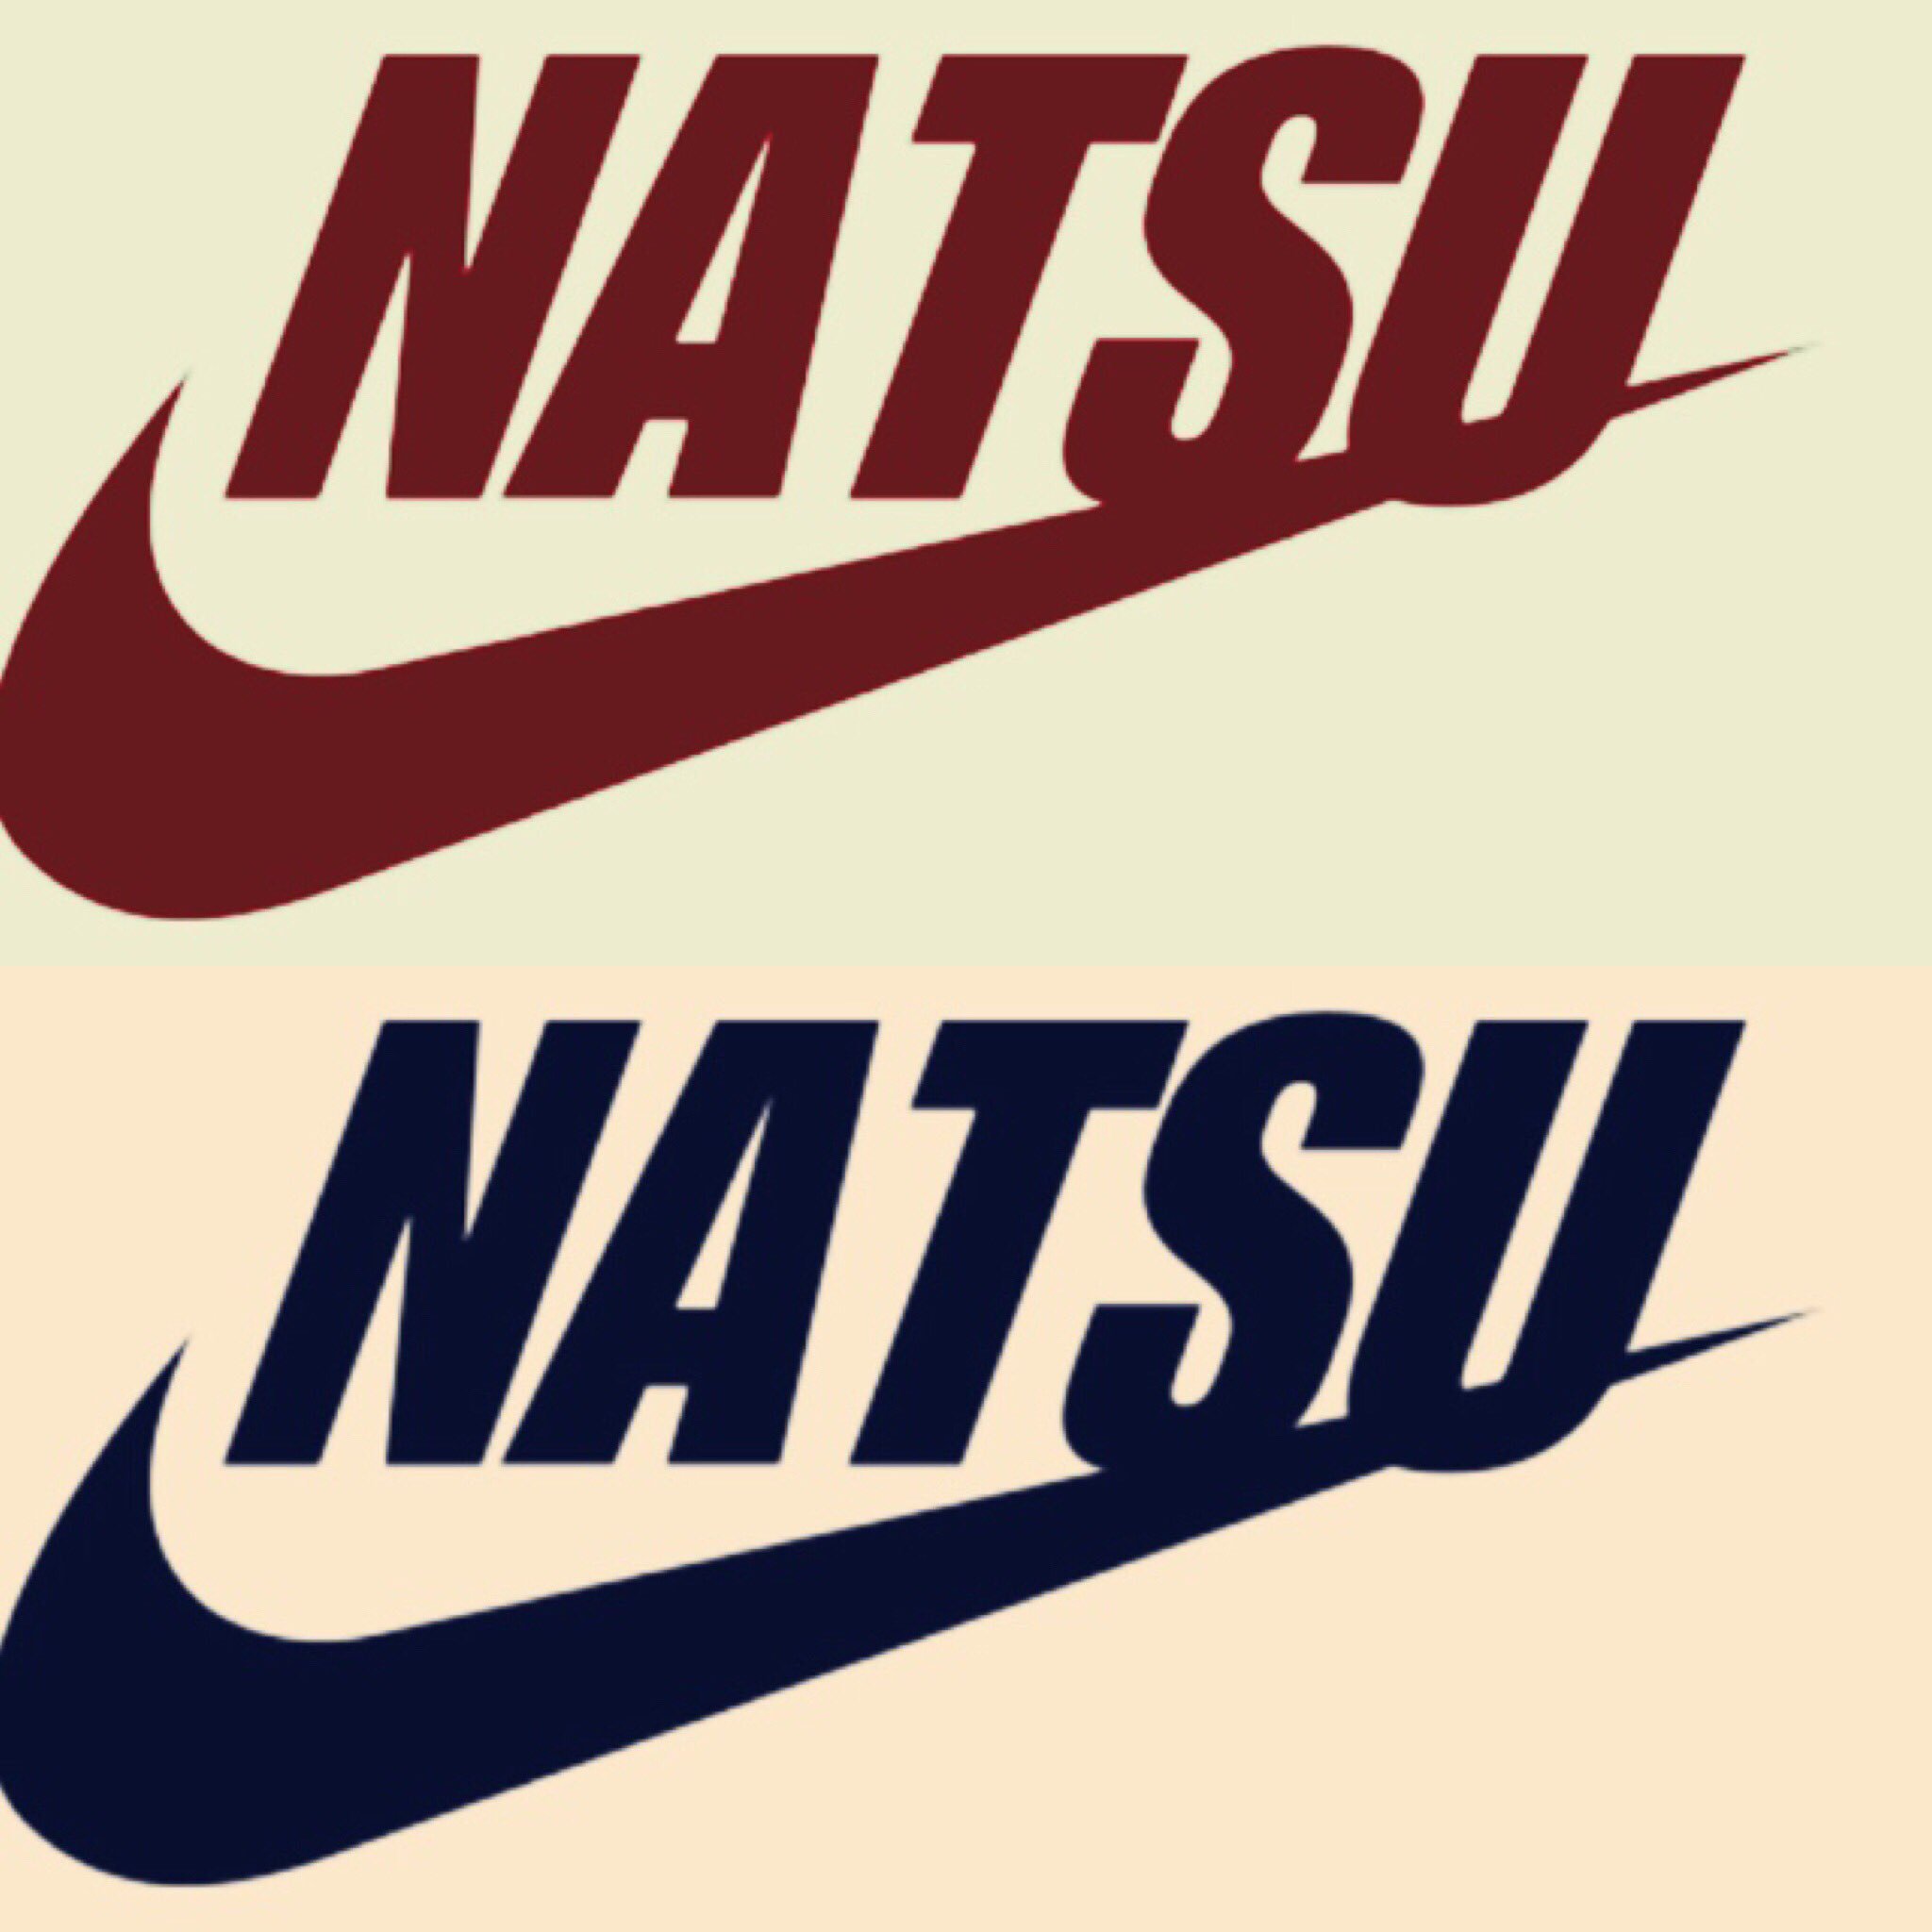 Natsu 大人気 Nike 名前ロゴ 前回の名前ロゴが大人気だったので もう一度今日 土曜日 10月15日 限定 で Nike 名前ロゴのもっともっと オシャレな加工バージョンを お作りしたいと思いまーす 欲しい人rt 欲しい人dm 欲しい人follow